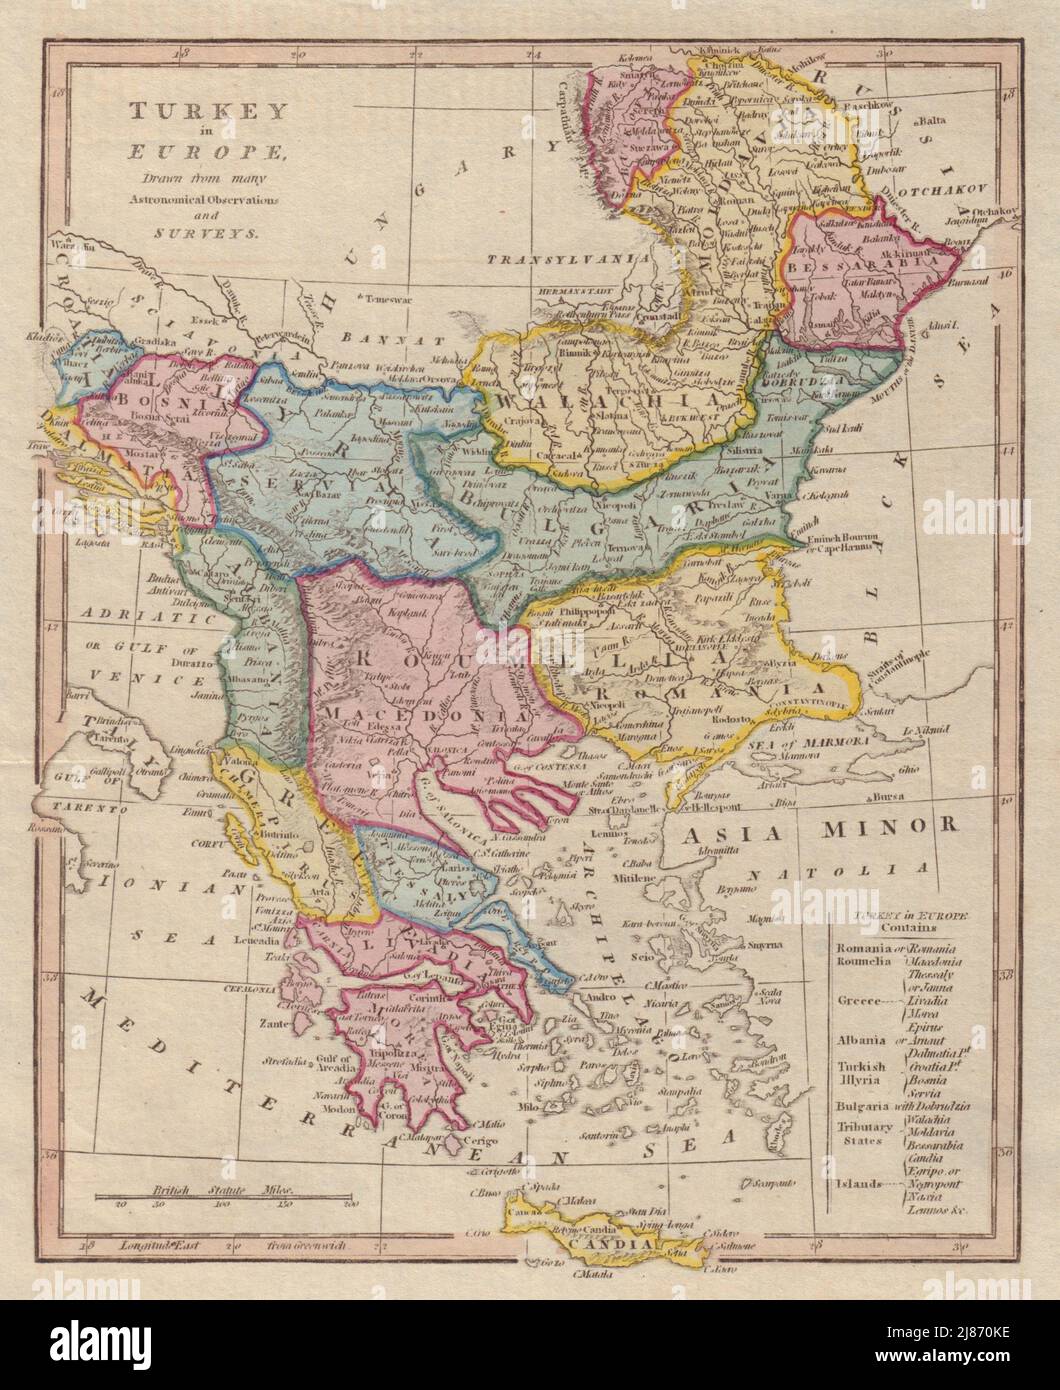 La Turquie en Europe. Balkans Grèce. La Roumanie et la Bulgarie sont inversées. CARTE COOKE 1817 Banque D'Images